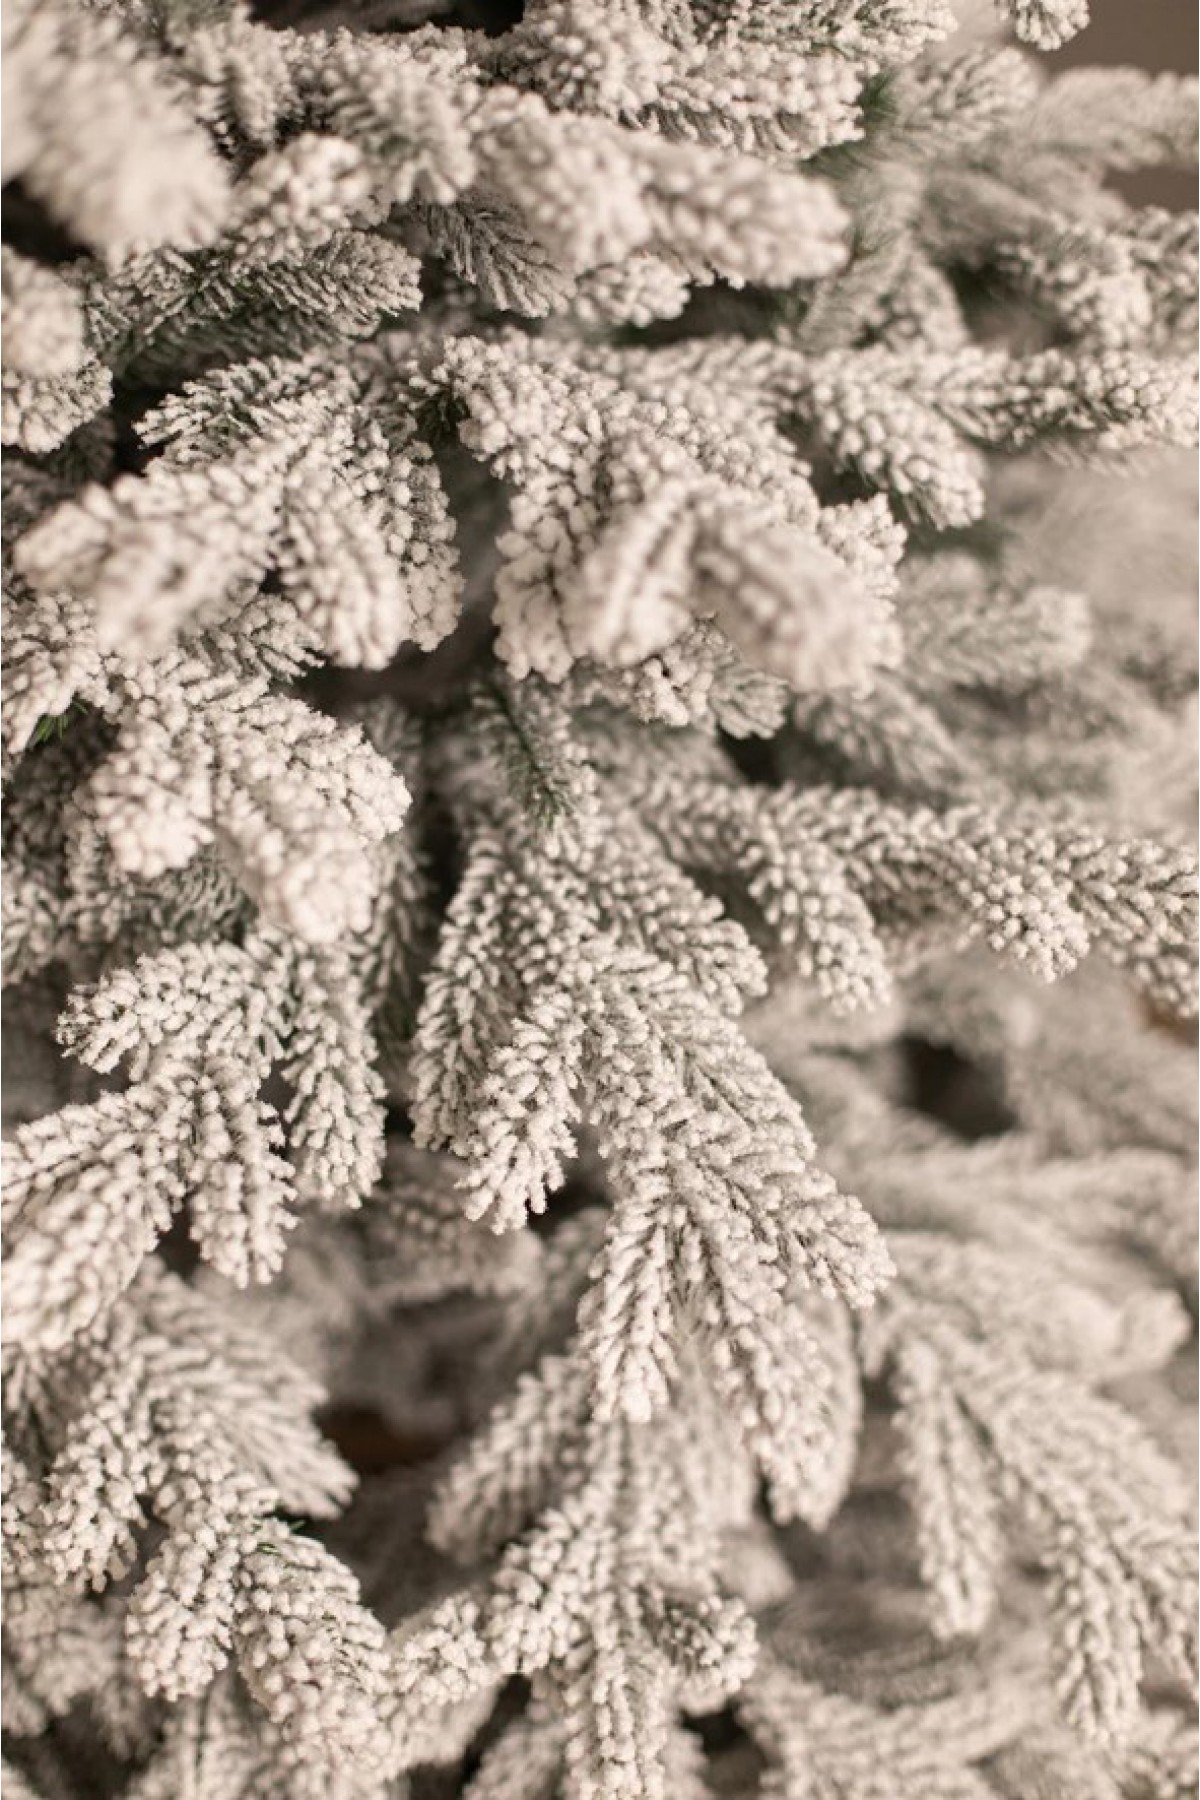 Ёлка литая заснеженная Закарпатская 180 см | новогодняя заснеженная елка